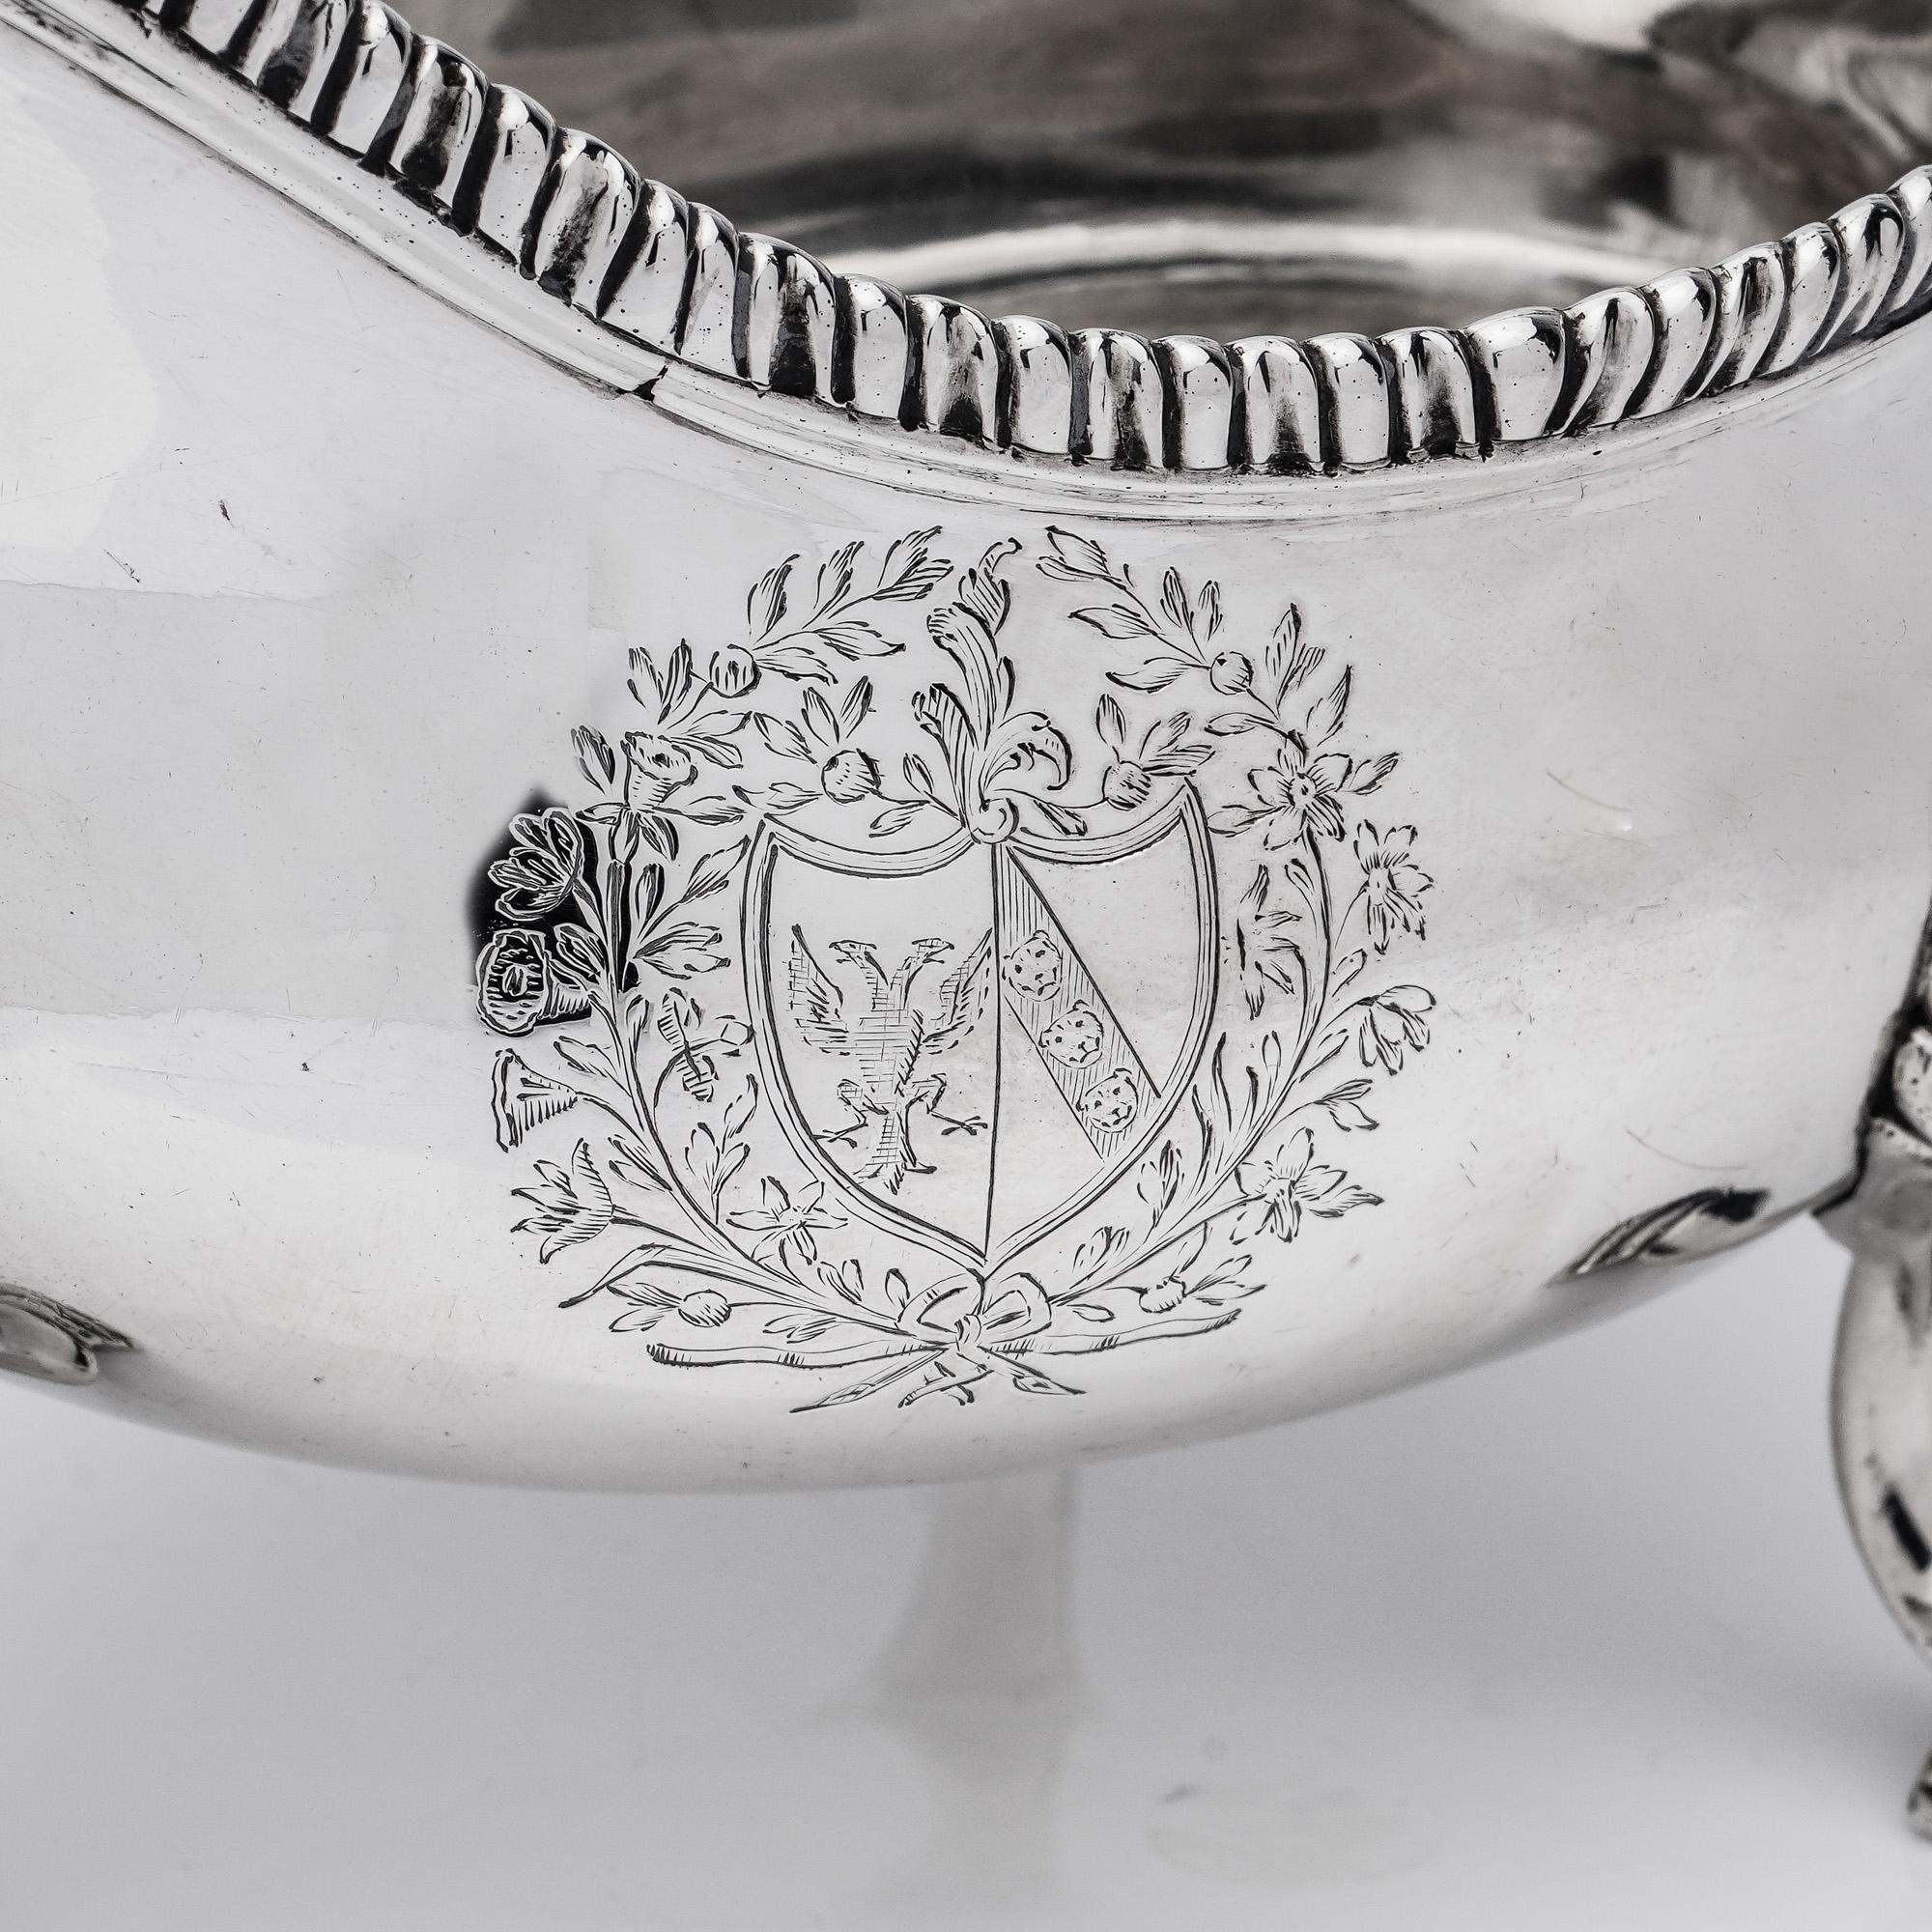 Paire de saucières en argent sterling ancien George III avec armoiries. 
Créateur : George Smith (II)
Fabriqué à Londres, 1767
Entièrement poinçonné.

Paire de saucières de forme ovale, avec des poignées en forme de rouleau coiffé de feuilles,